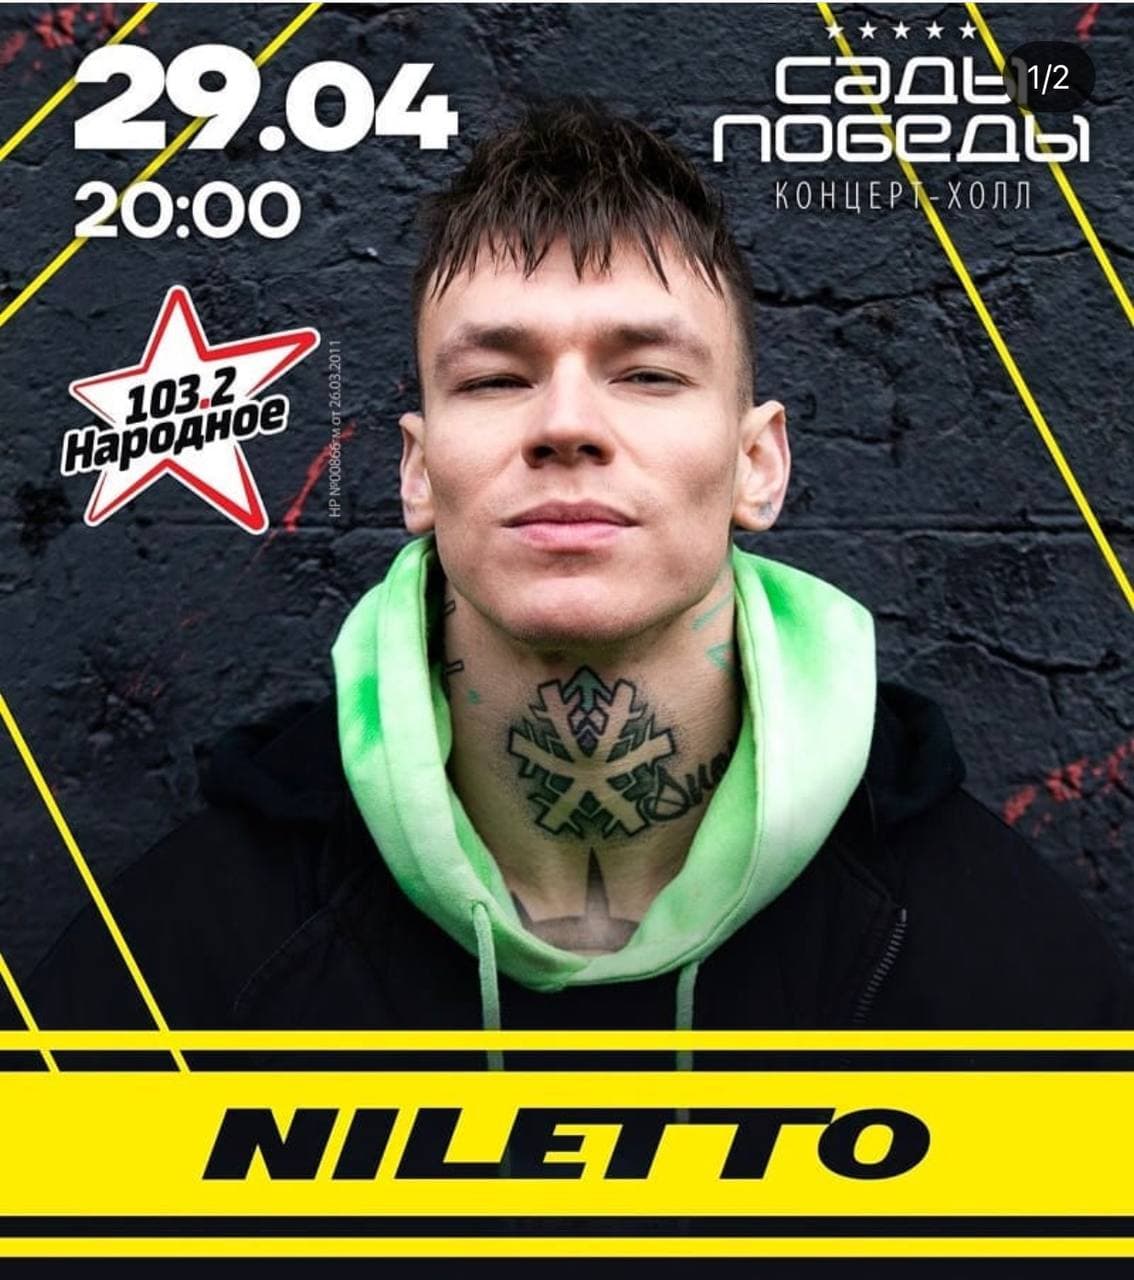 niletto 2021